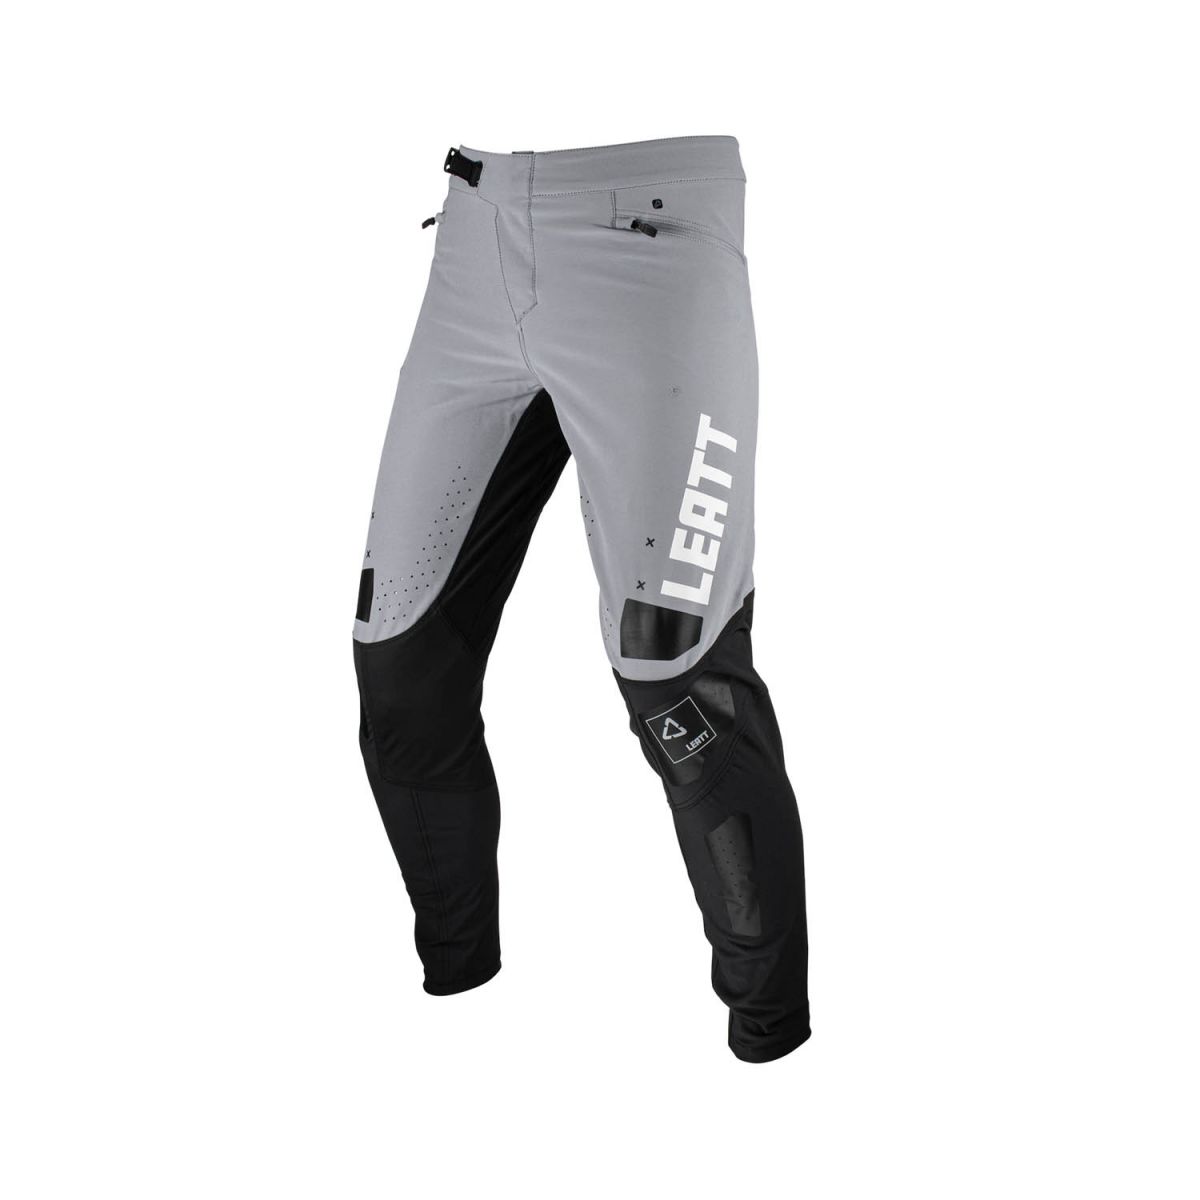 Pantalones largos para mtb enduro o descenso Leatt Gravity 4.0 Titanium color negro y gris